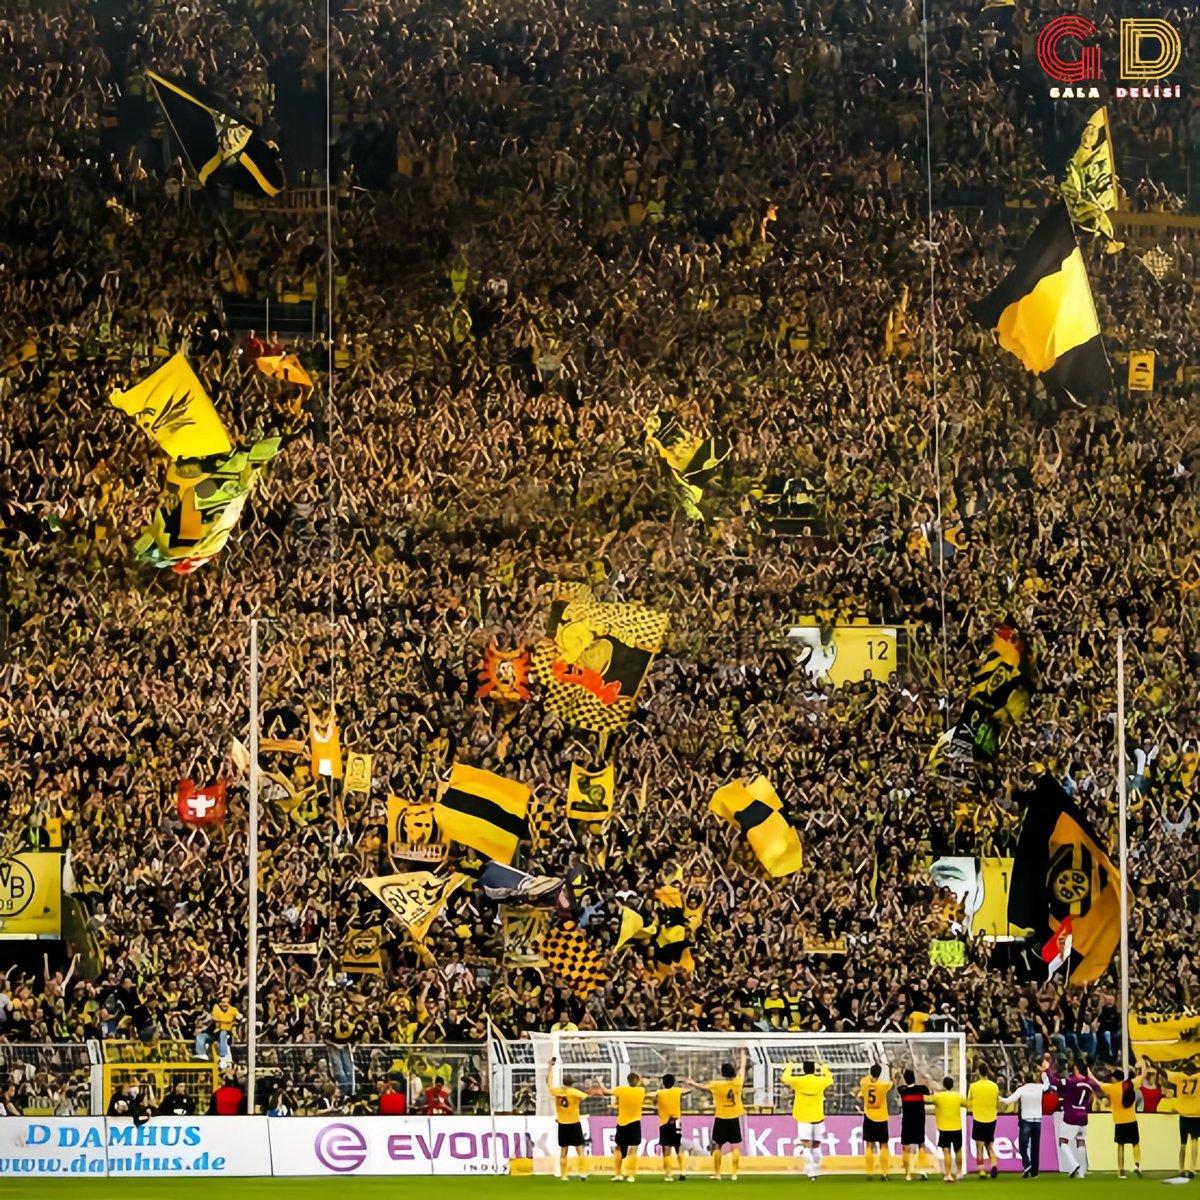 Dortmund'un 'Sarı Duvar'ı 🟨

Stadımız için uygunsa kale arkasındaki koltuklar sökülerek bu düzene geçilmeli.
Kapasitesinin artması, gelirin artması ve atmosferin bambaşka bir boyuta taşınması demektir.

Cehennem bambaşka şekle bürünür.

Galatasarayımız için 'Kırmızı Duvar' 🟥